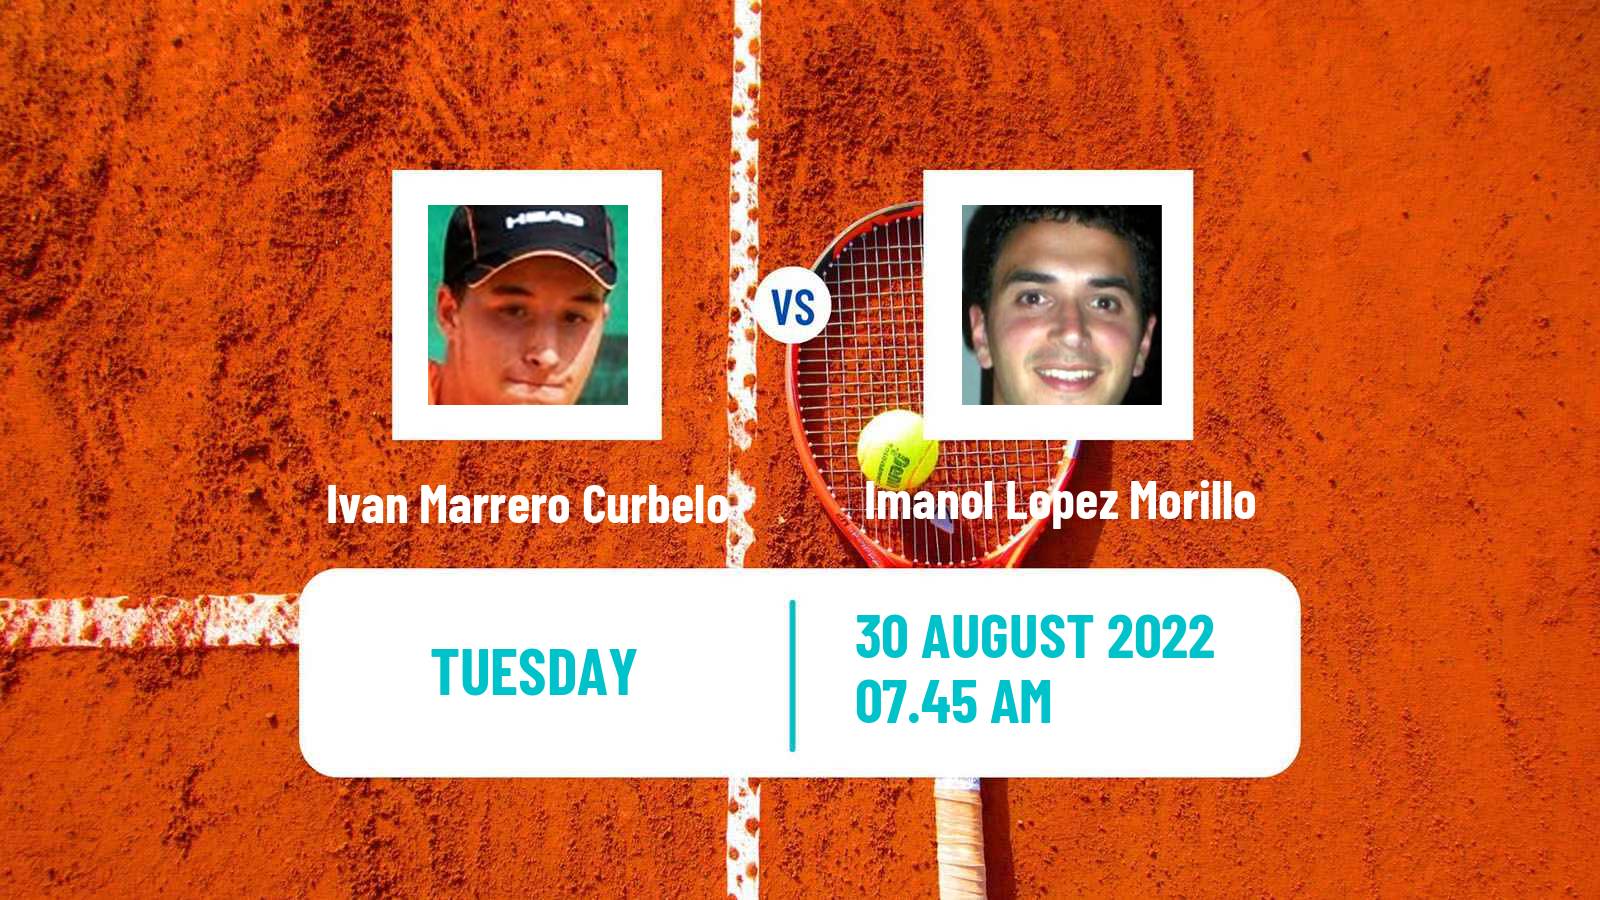 Tennis ITF Tournaments Ivan Marrero Curbelo - Imanol Lopez Morillo